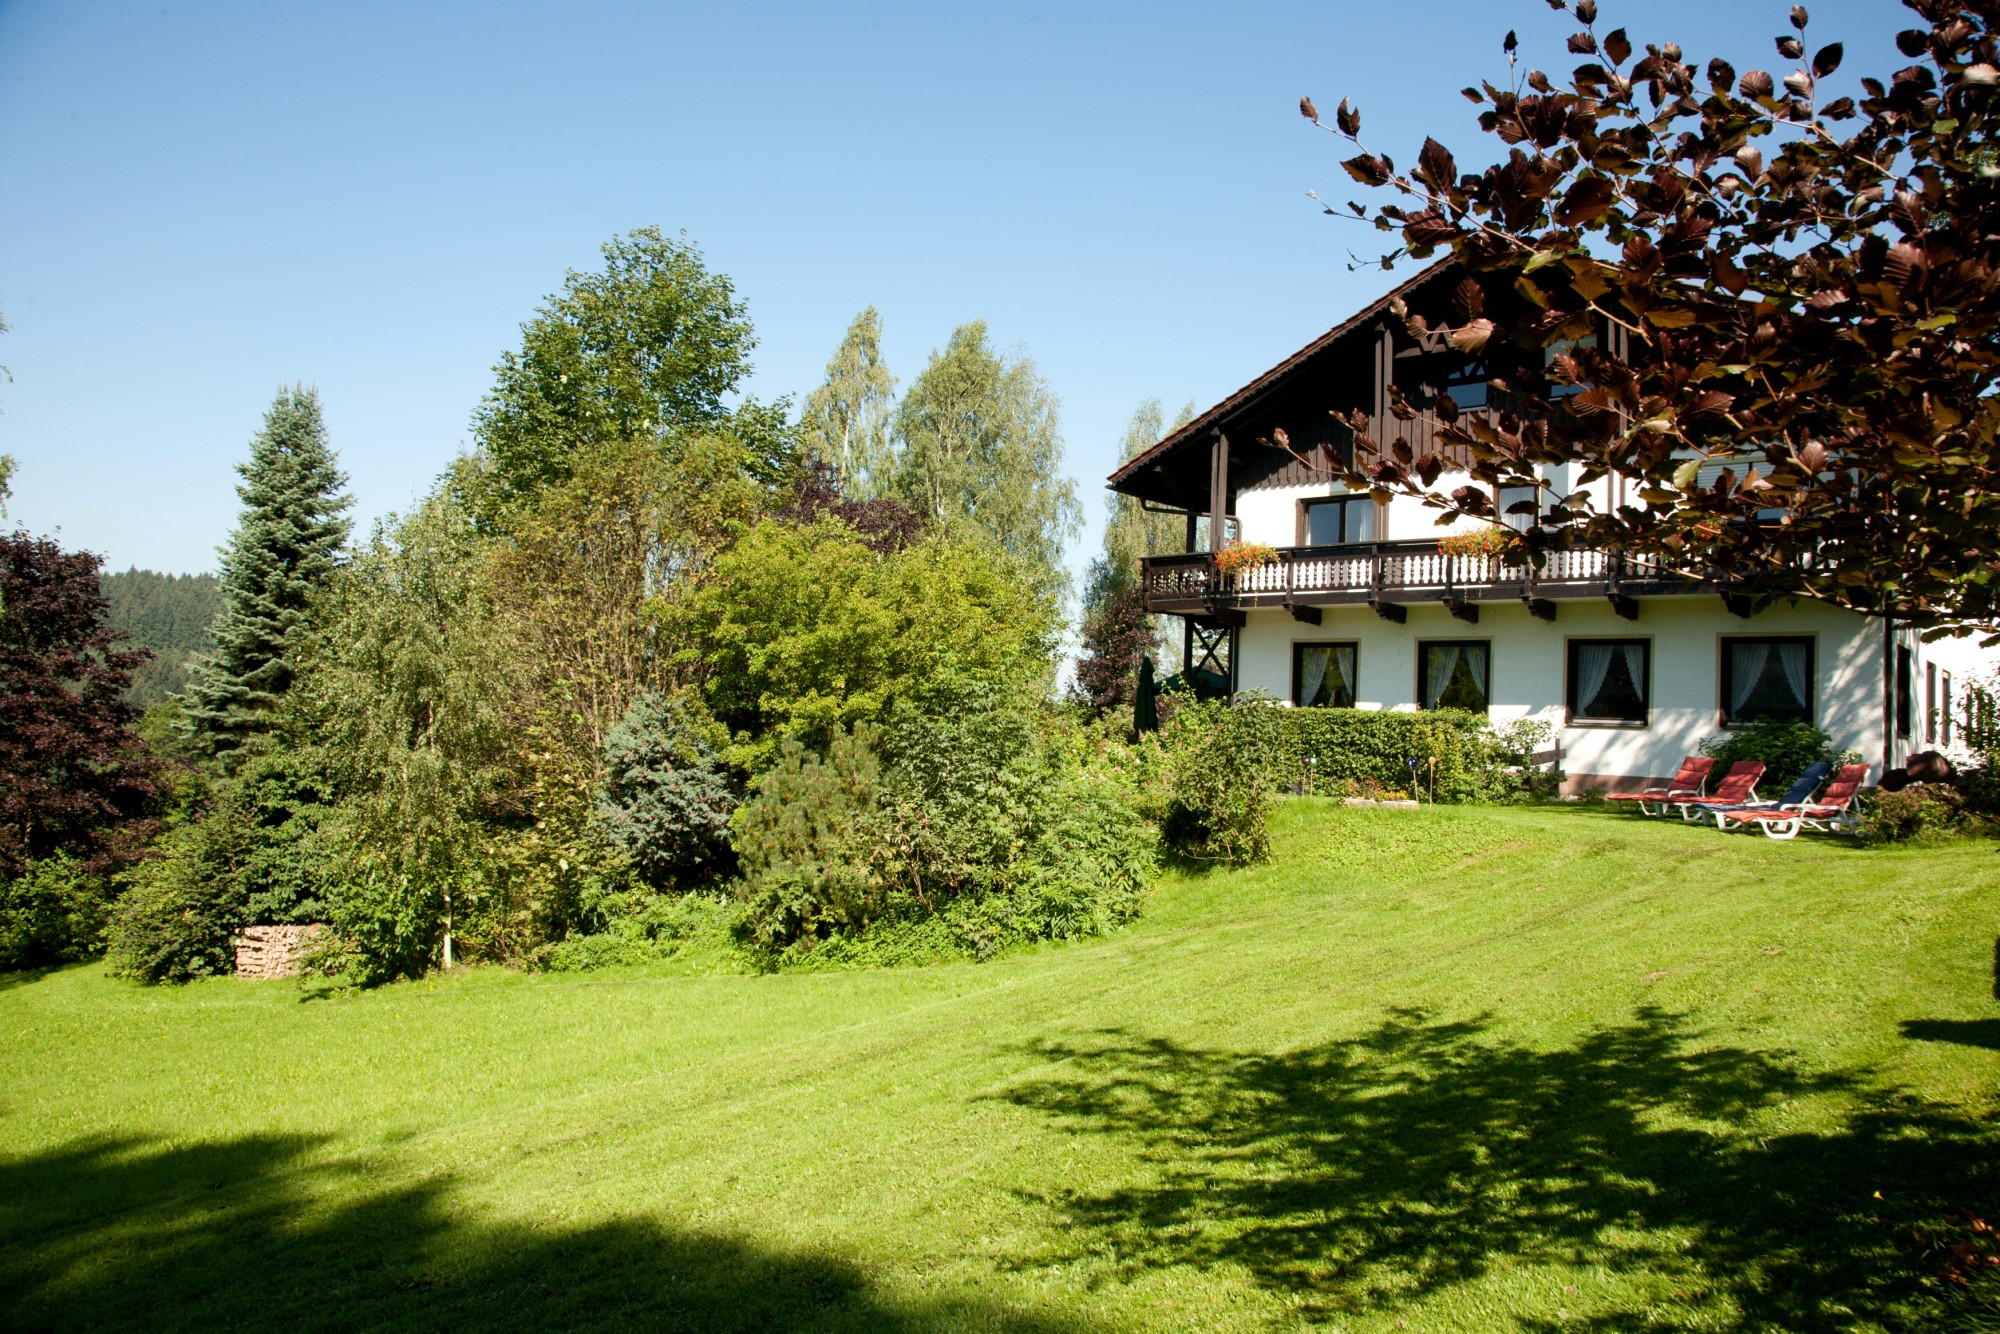 Liegeiwese Landhotel Bayerwald